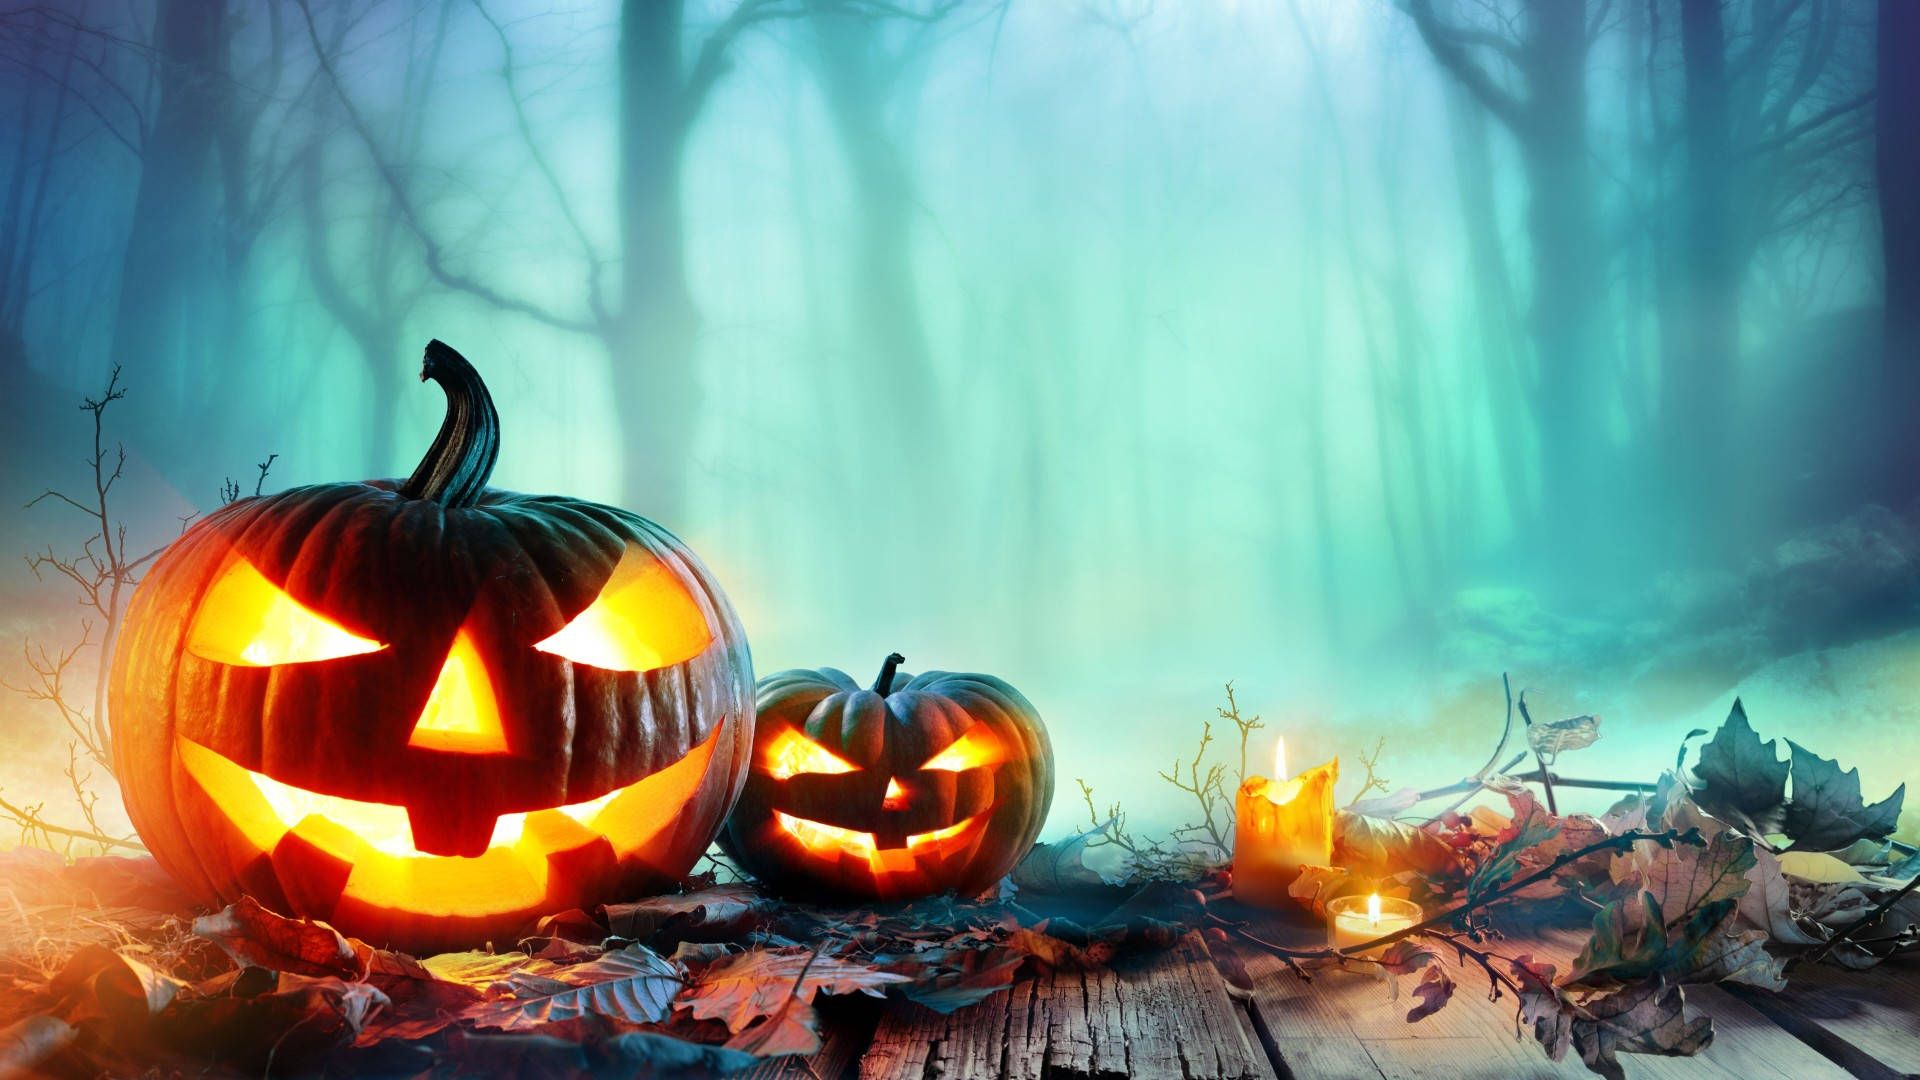 Halloween pumpkins in the forest wallpaper 1920x1080 - Halloween desktop, Halloween